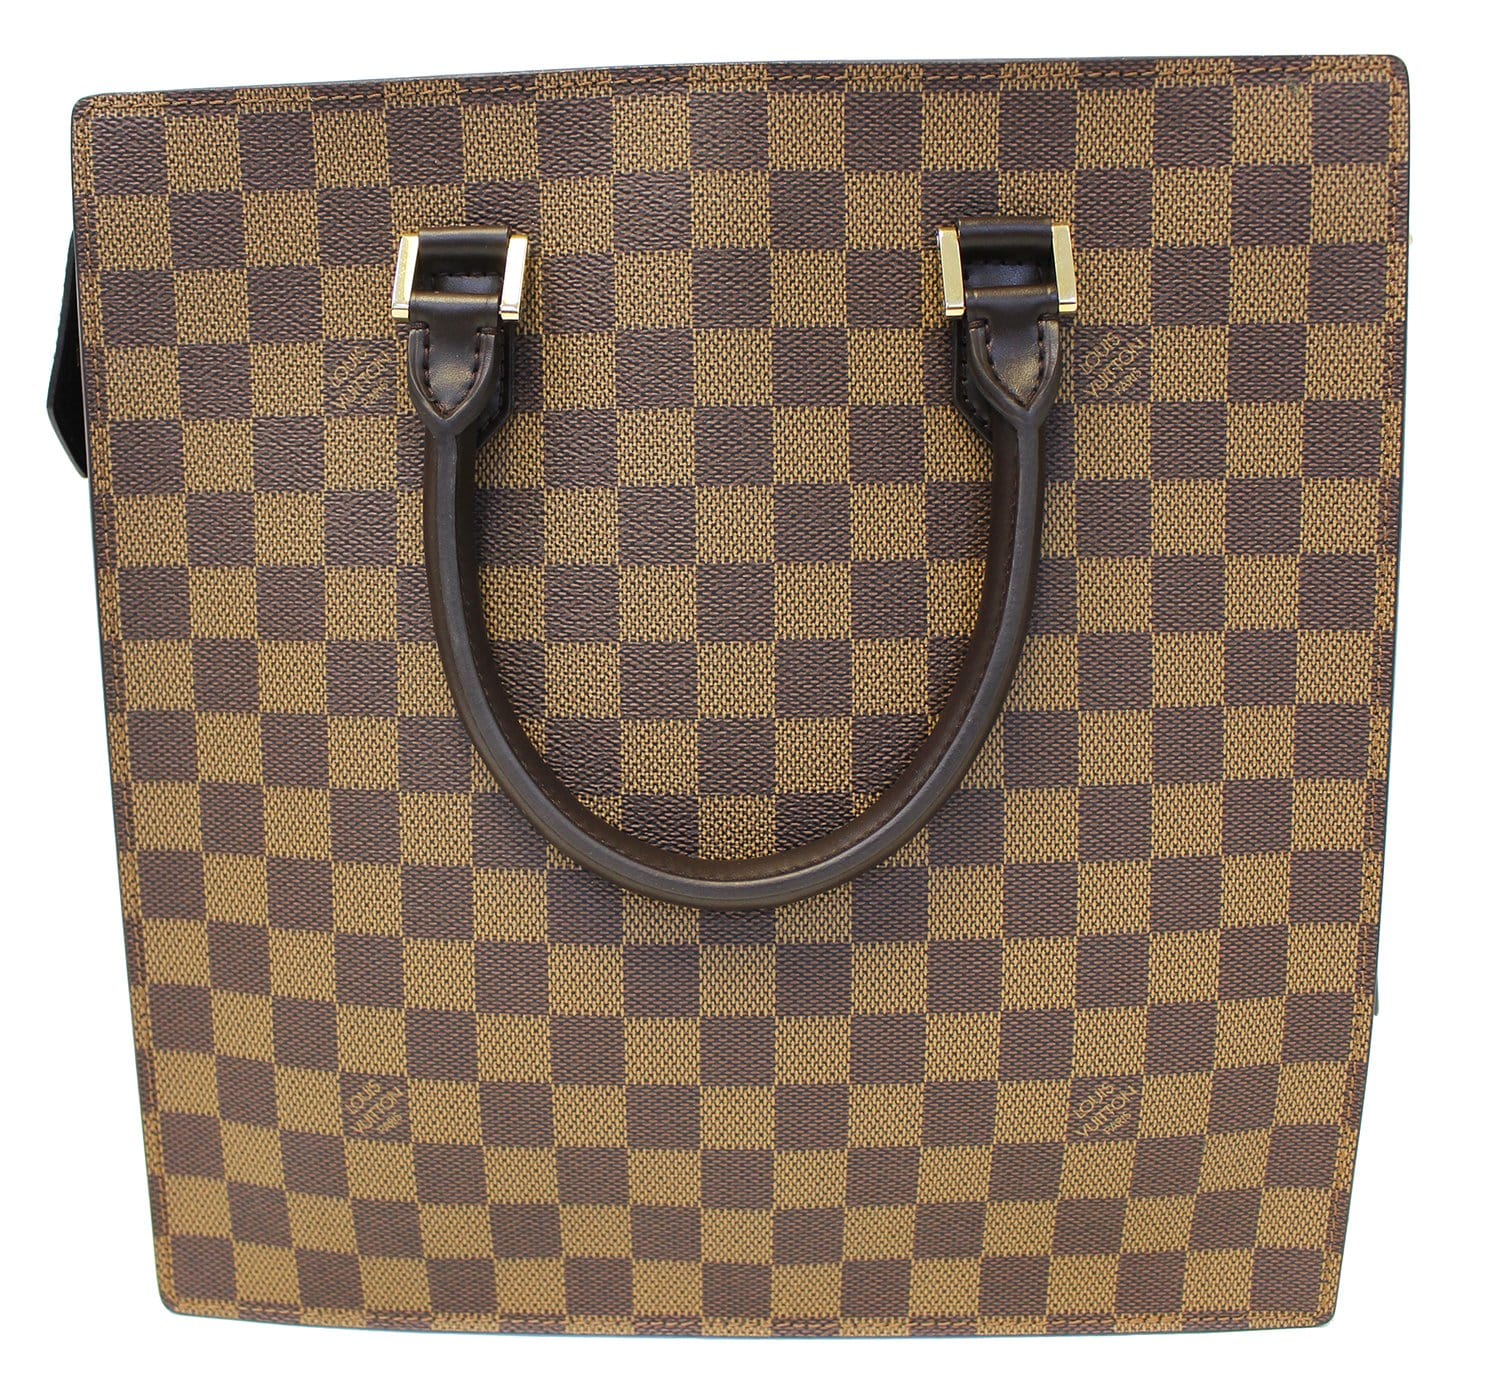 loui vuitton handbags  Popular handbags, Bags, Louis vuitton